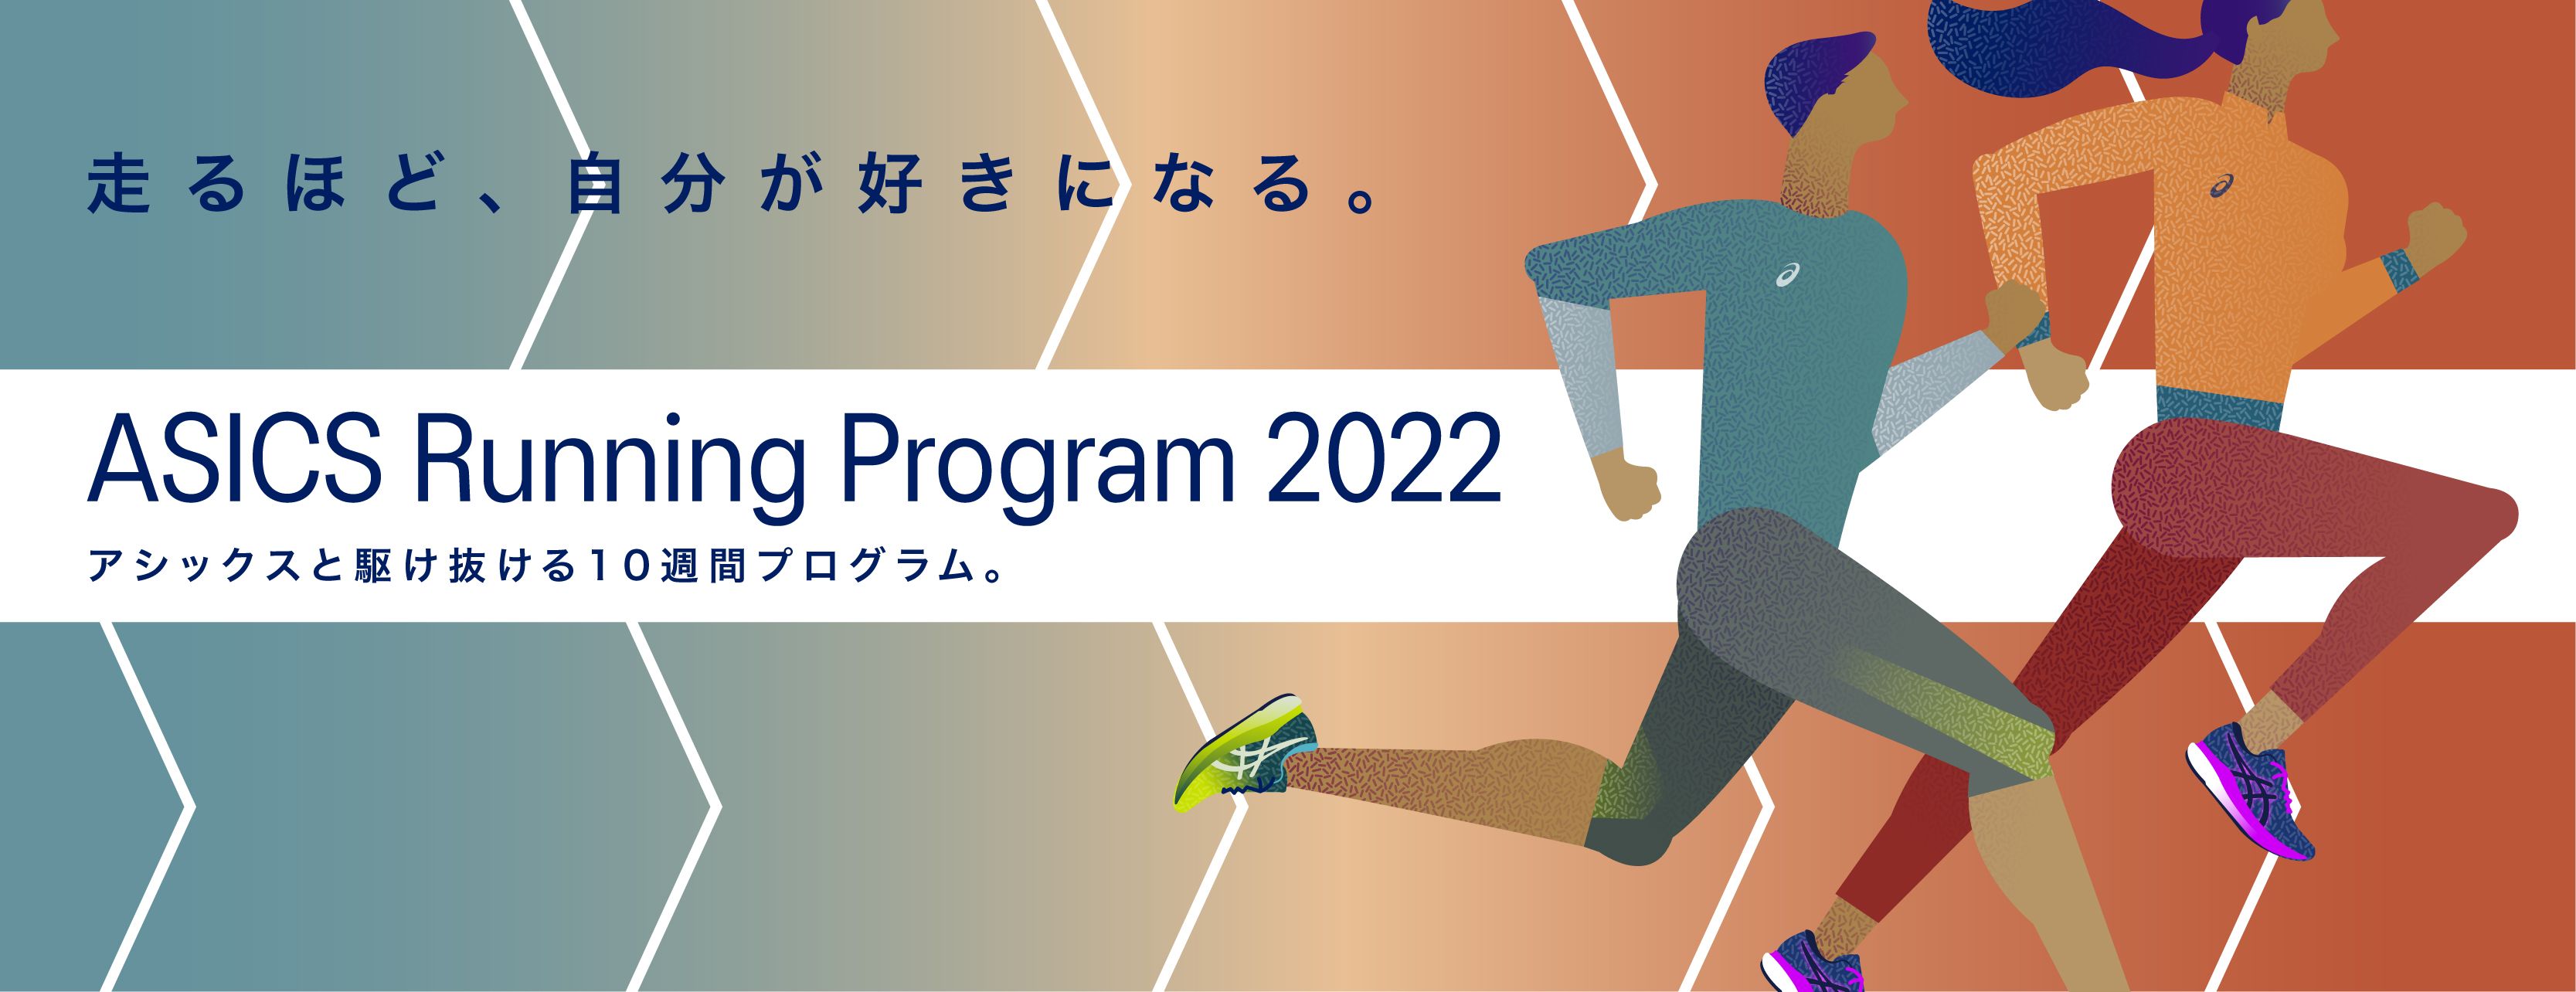 ASICS RUNNING PROGRAM 2022 キービジュアル